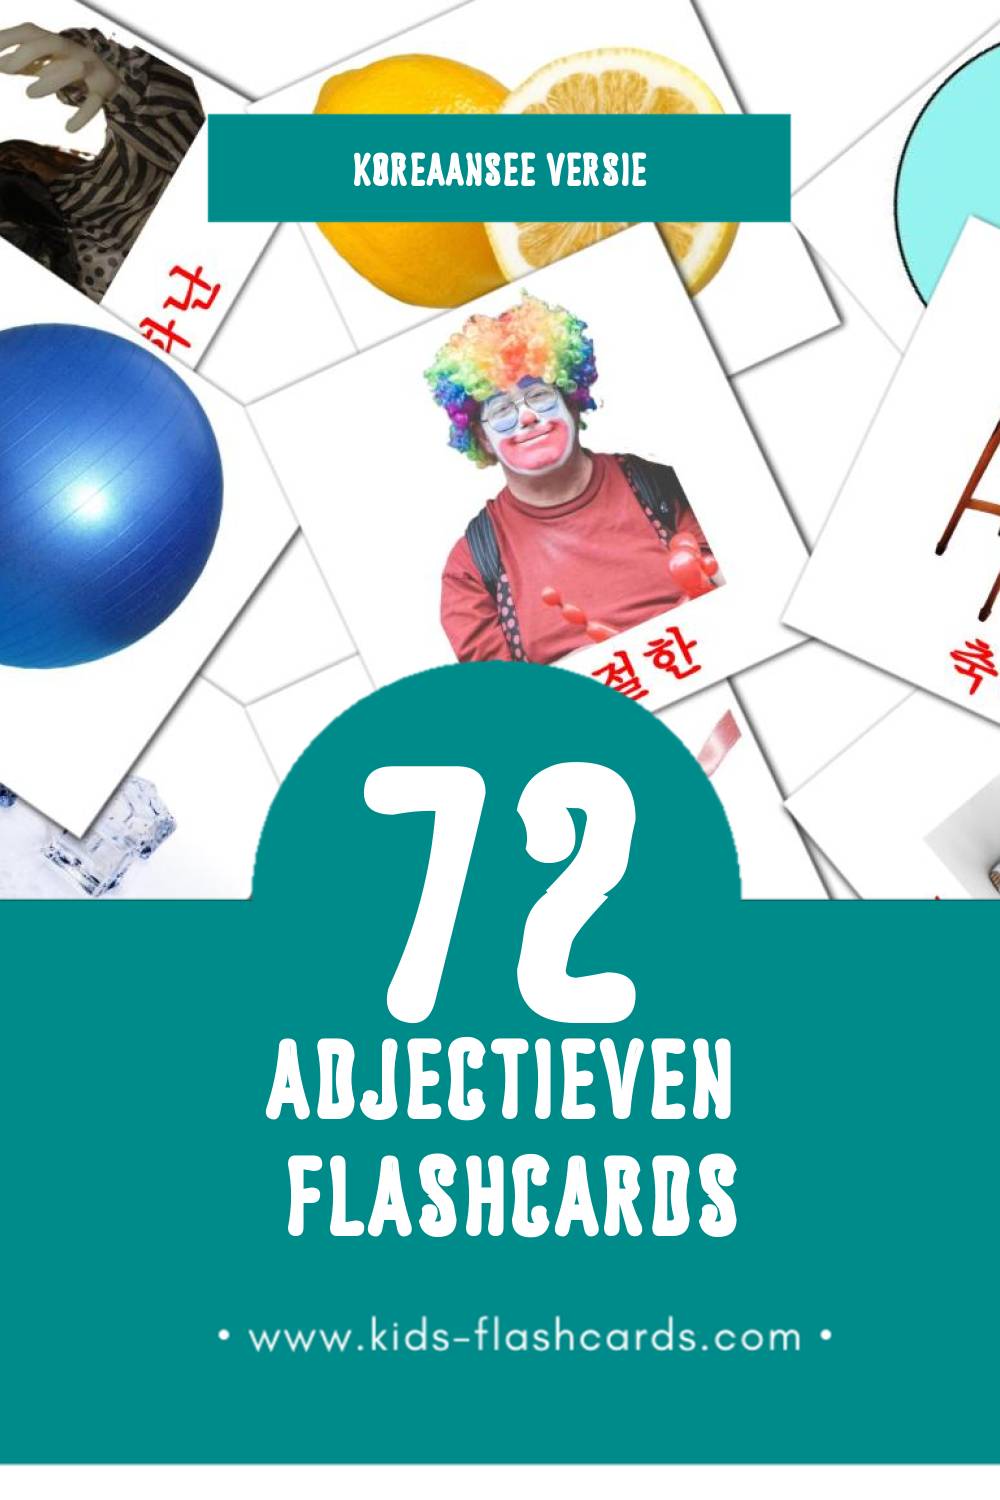 Visuele 형용사 Flashcards voor Kleuters (72 kaarten in het Koreaanse)